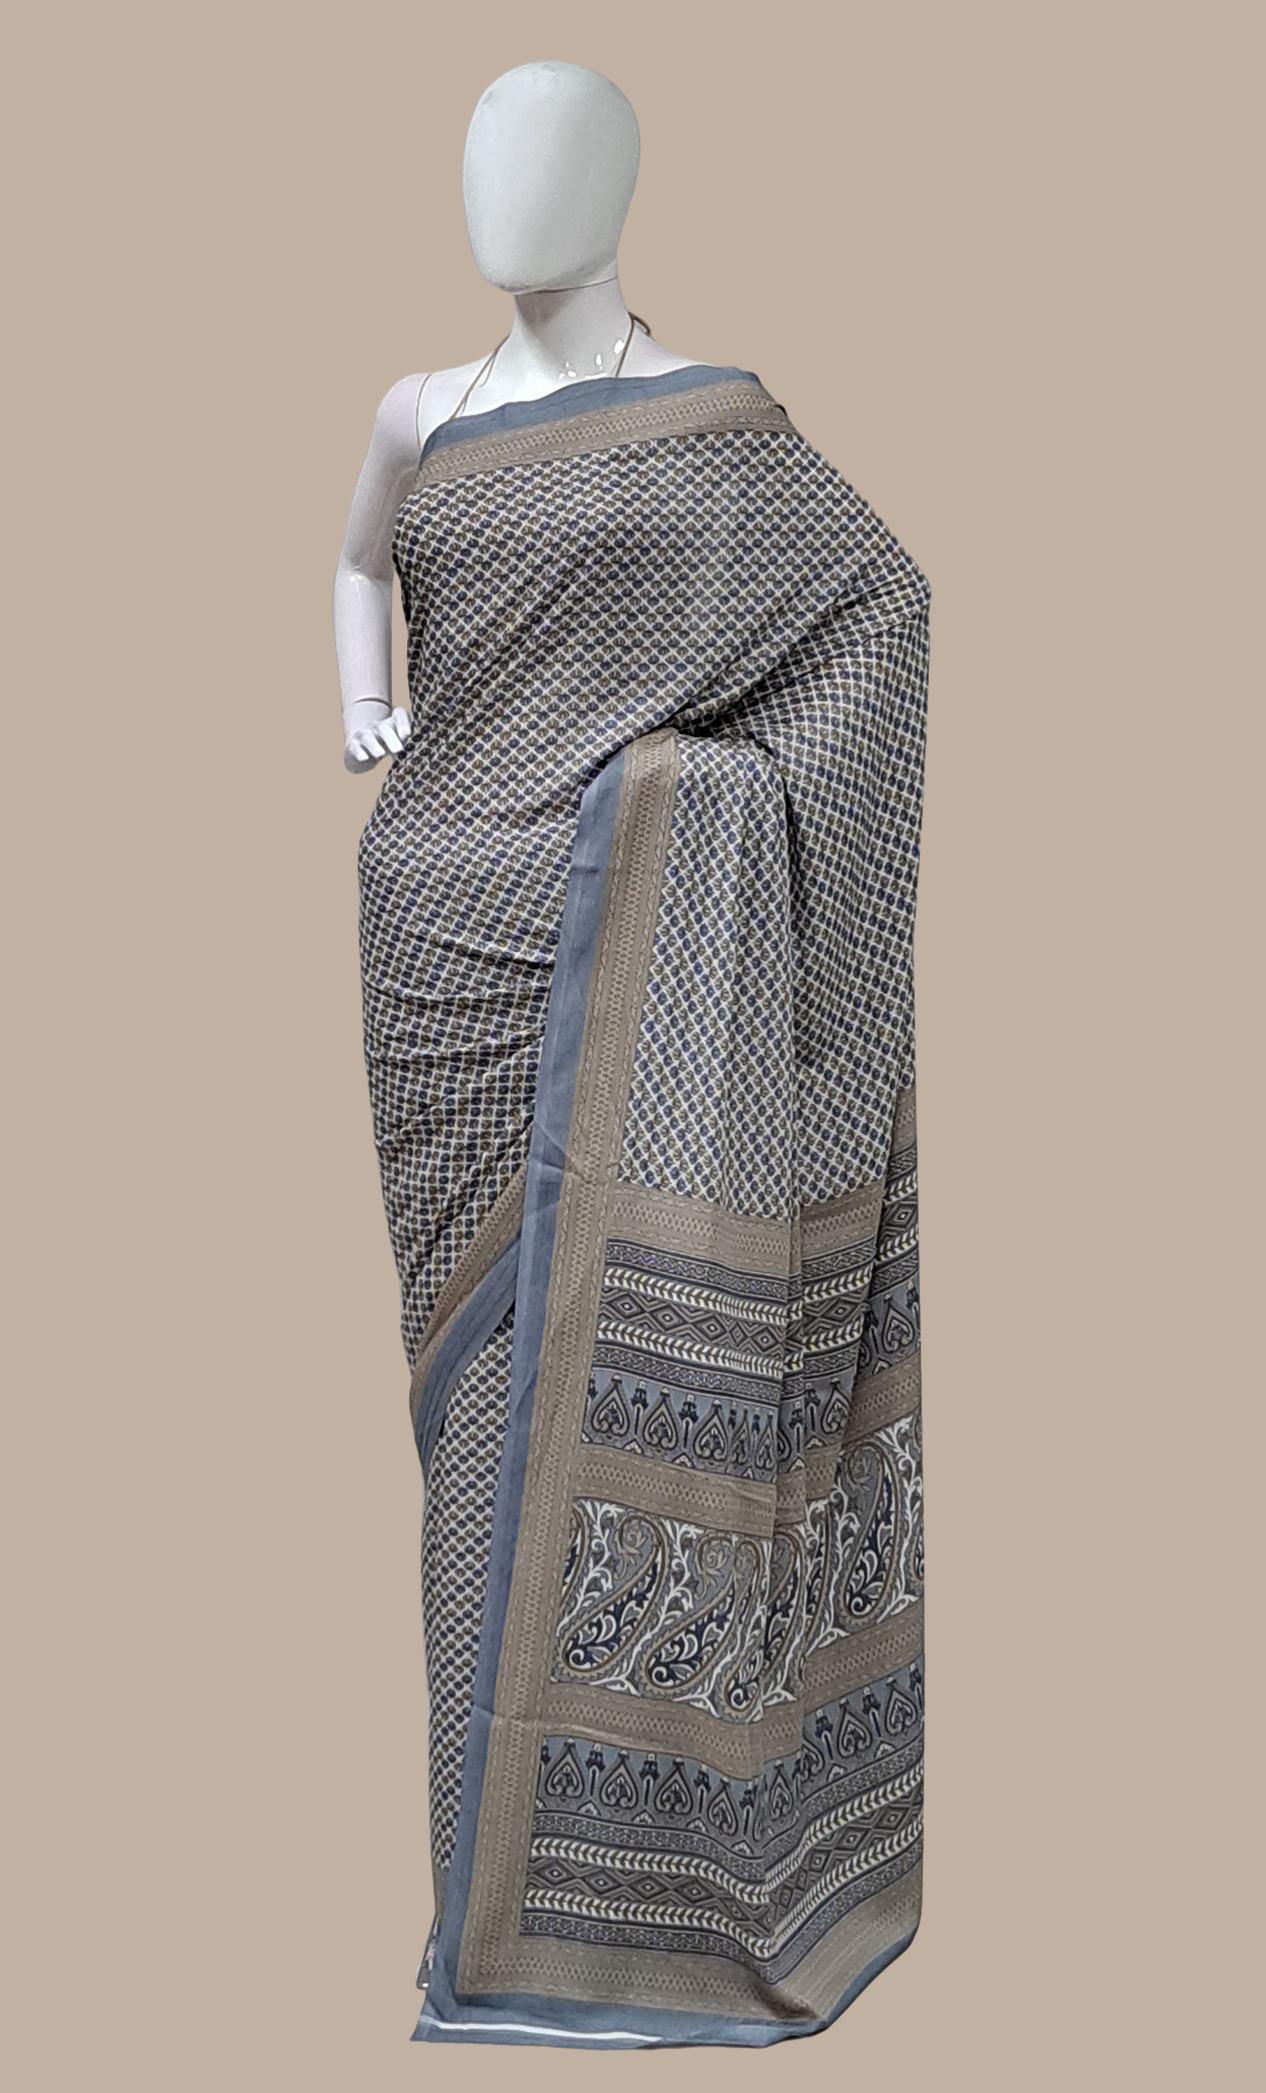 Grey Printed Sari